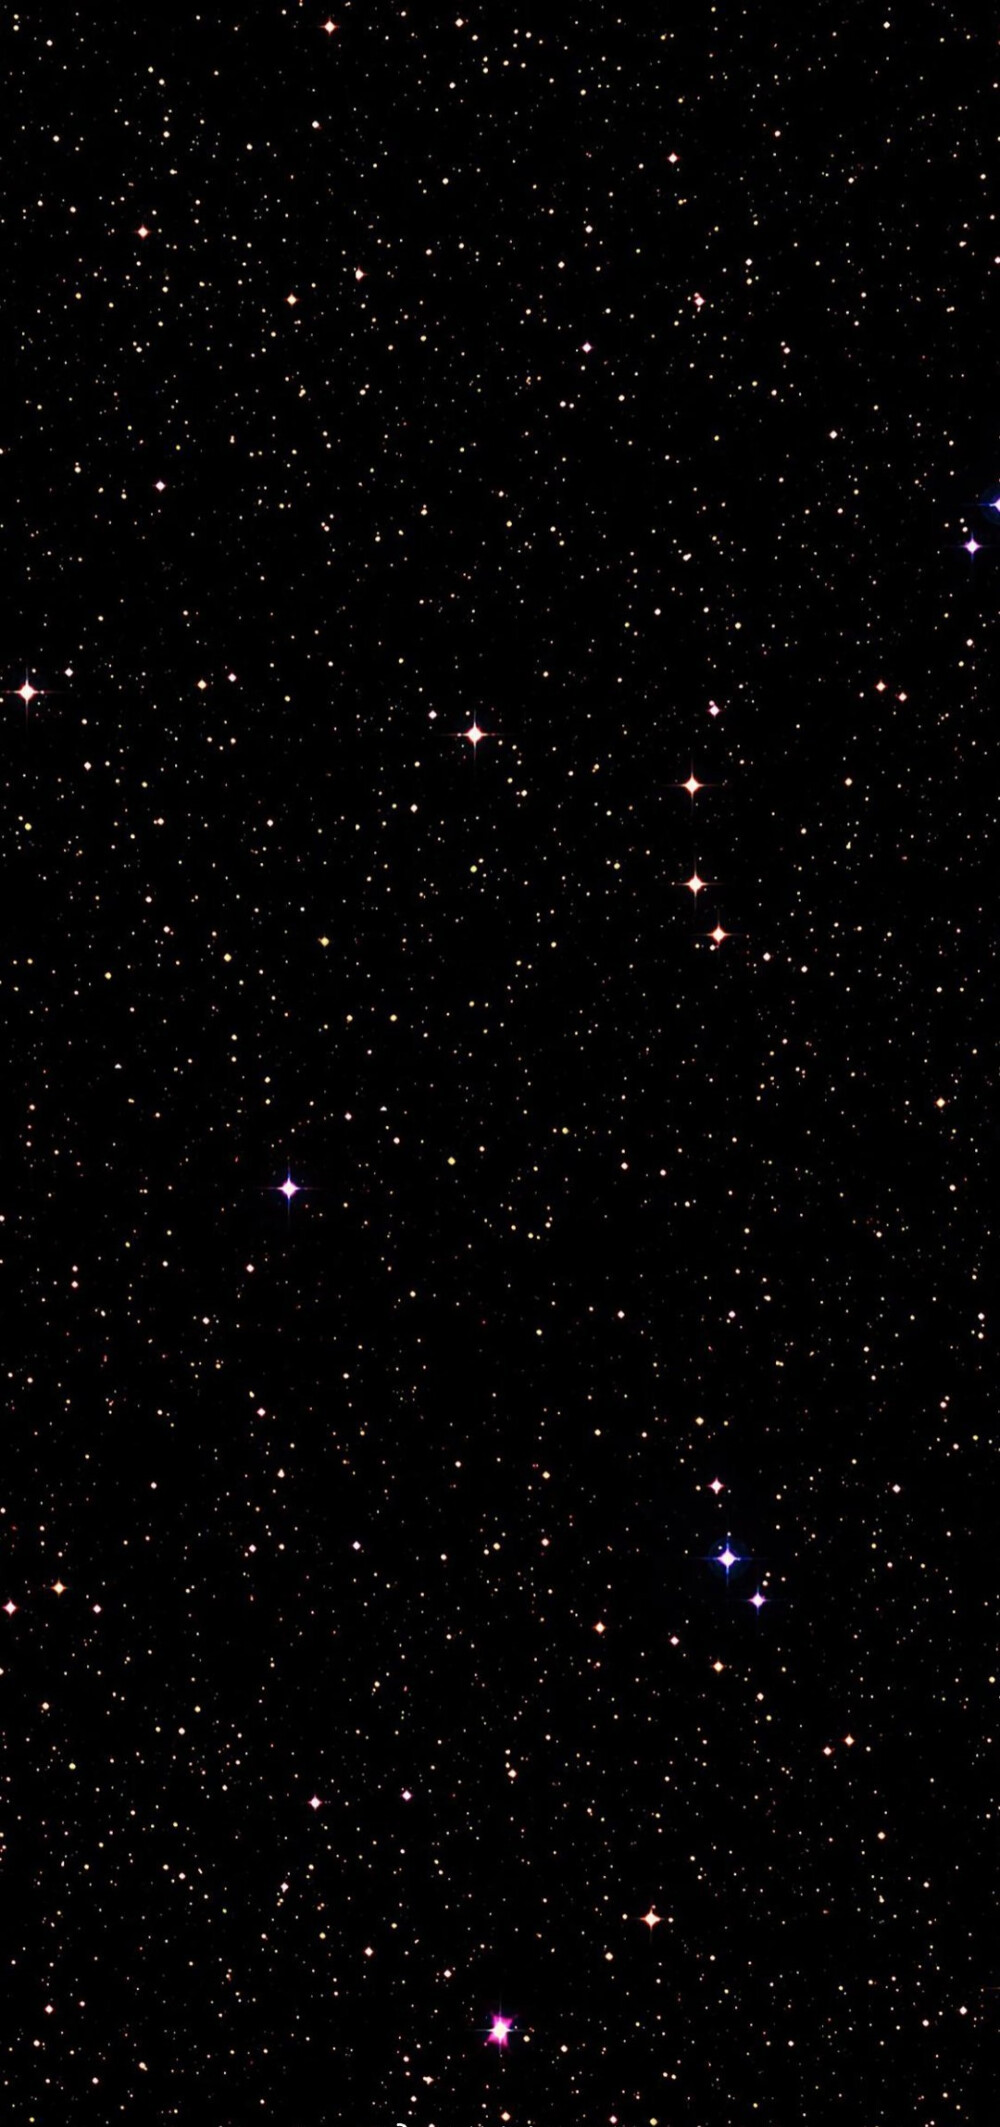 超仙星超仙星空背景图图片